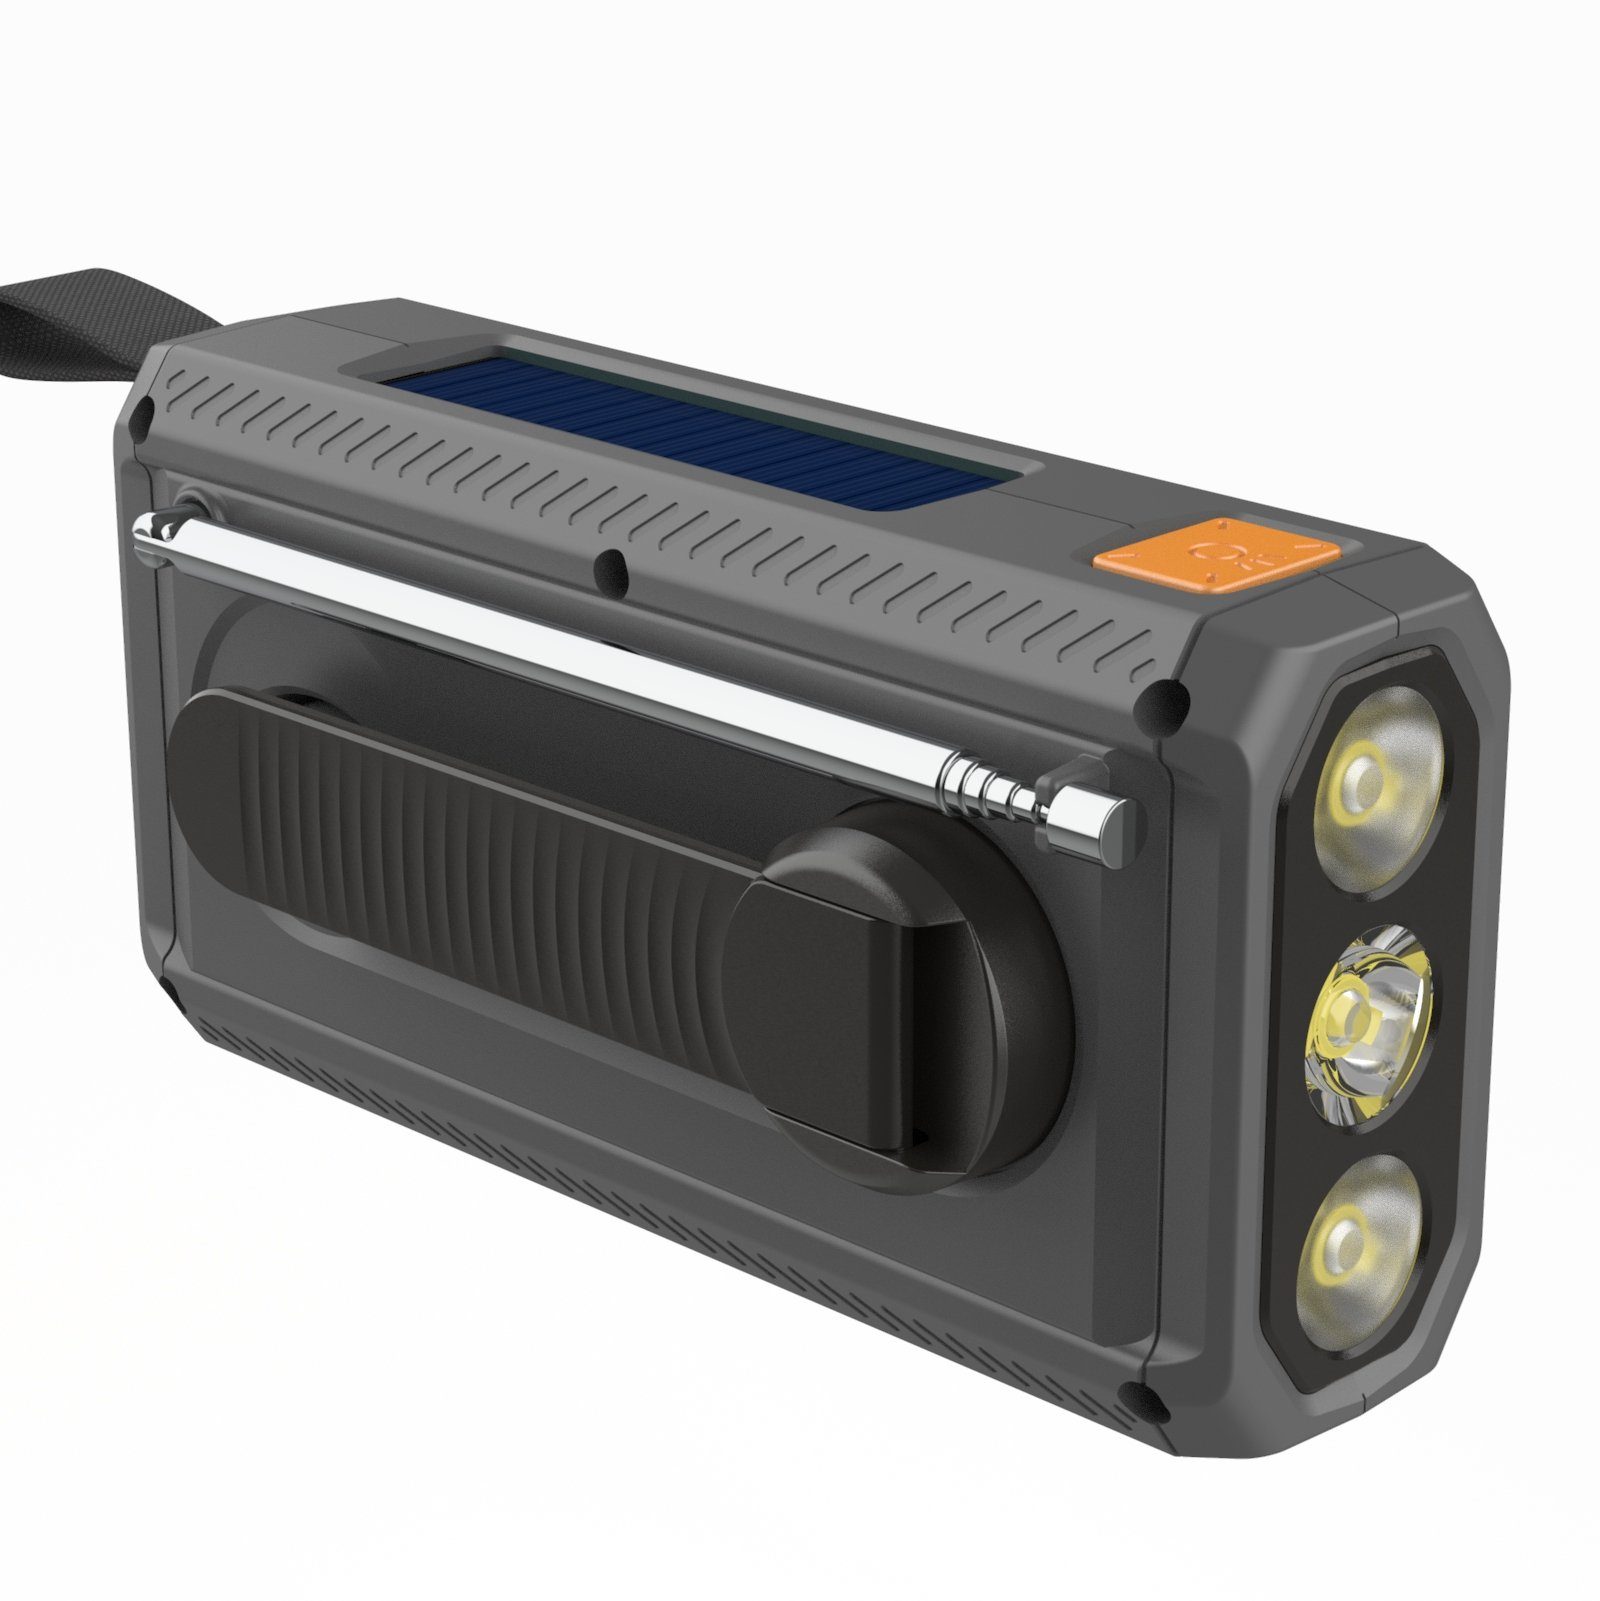 Tragbares Akku Reflexion (Digitalradio mAh, Alarmfunktion, Anschlüsse, SOS-Taschenlampe Notfallradio FM-Radio, Digitalradio (DAB), (DAB) TRA562DAB 2.000 mit spritzwassergeschützte Powerbank) Kurbelradio und Handyladefunktion Bluetooth,